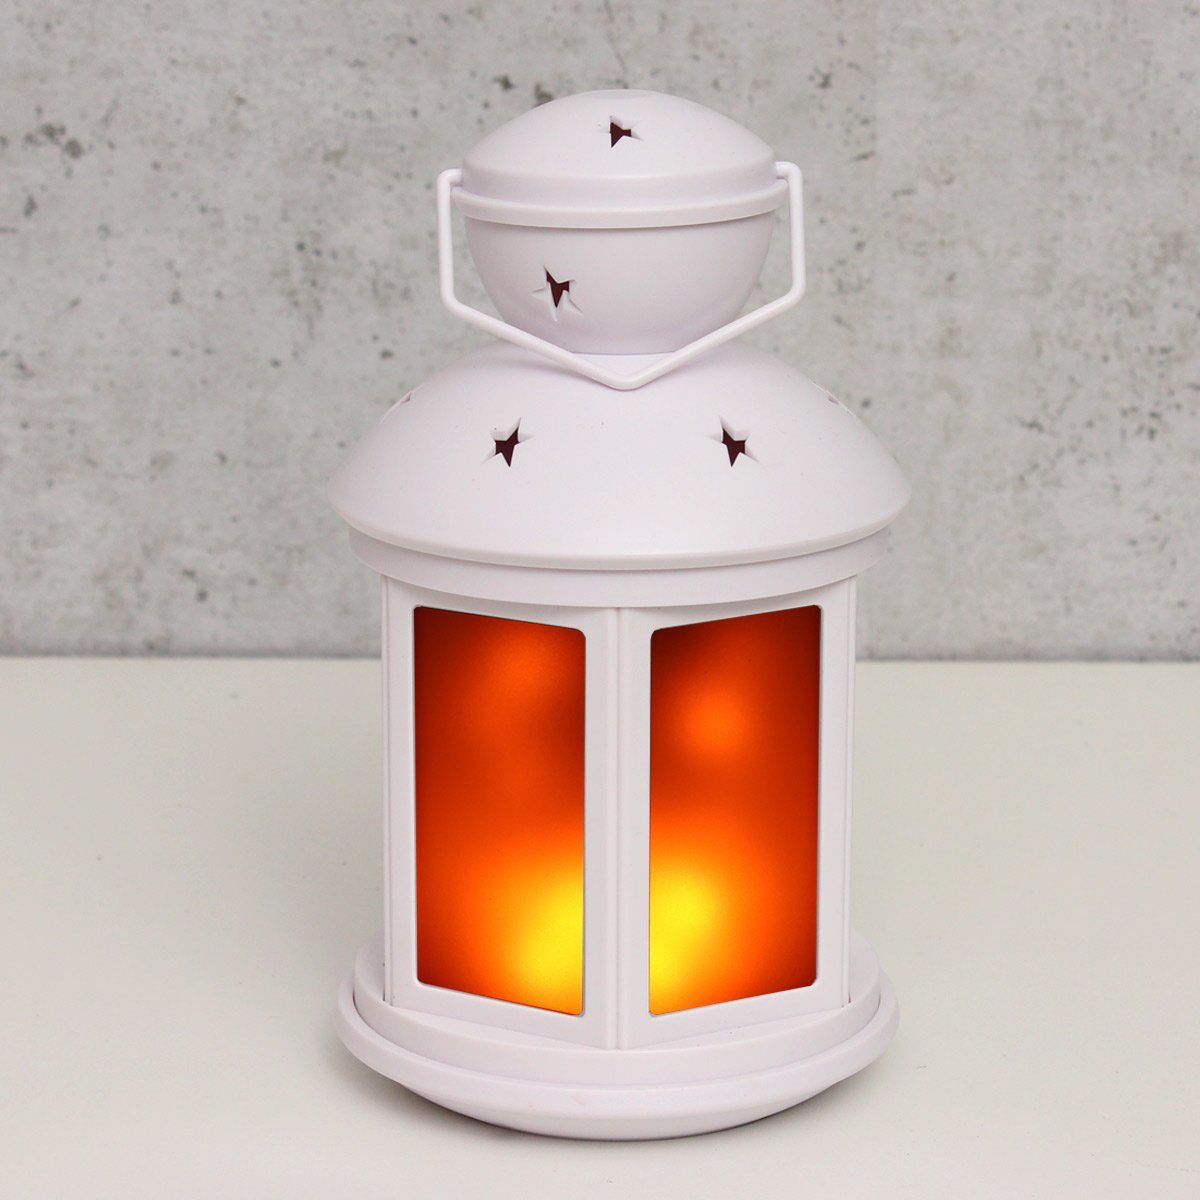 MARELIDA LED Laterne Dekolaterne amber weiß, 22cm LED LED Classic, flackernd Flammeneffekt Laterne mit